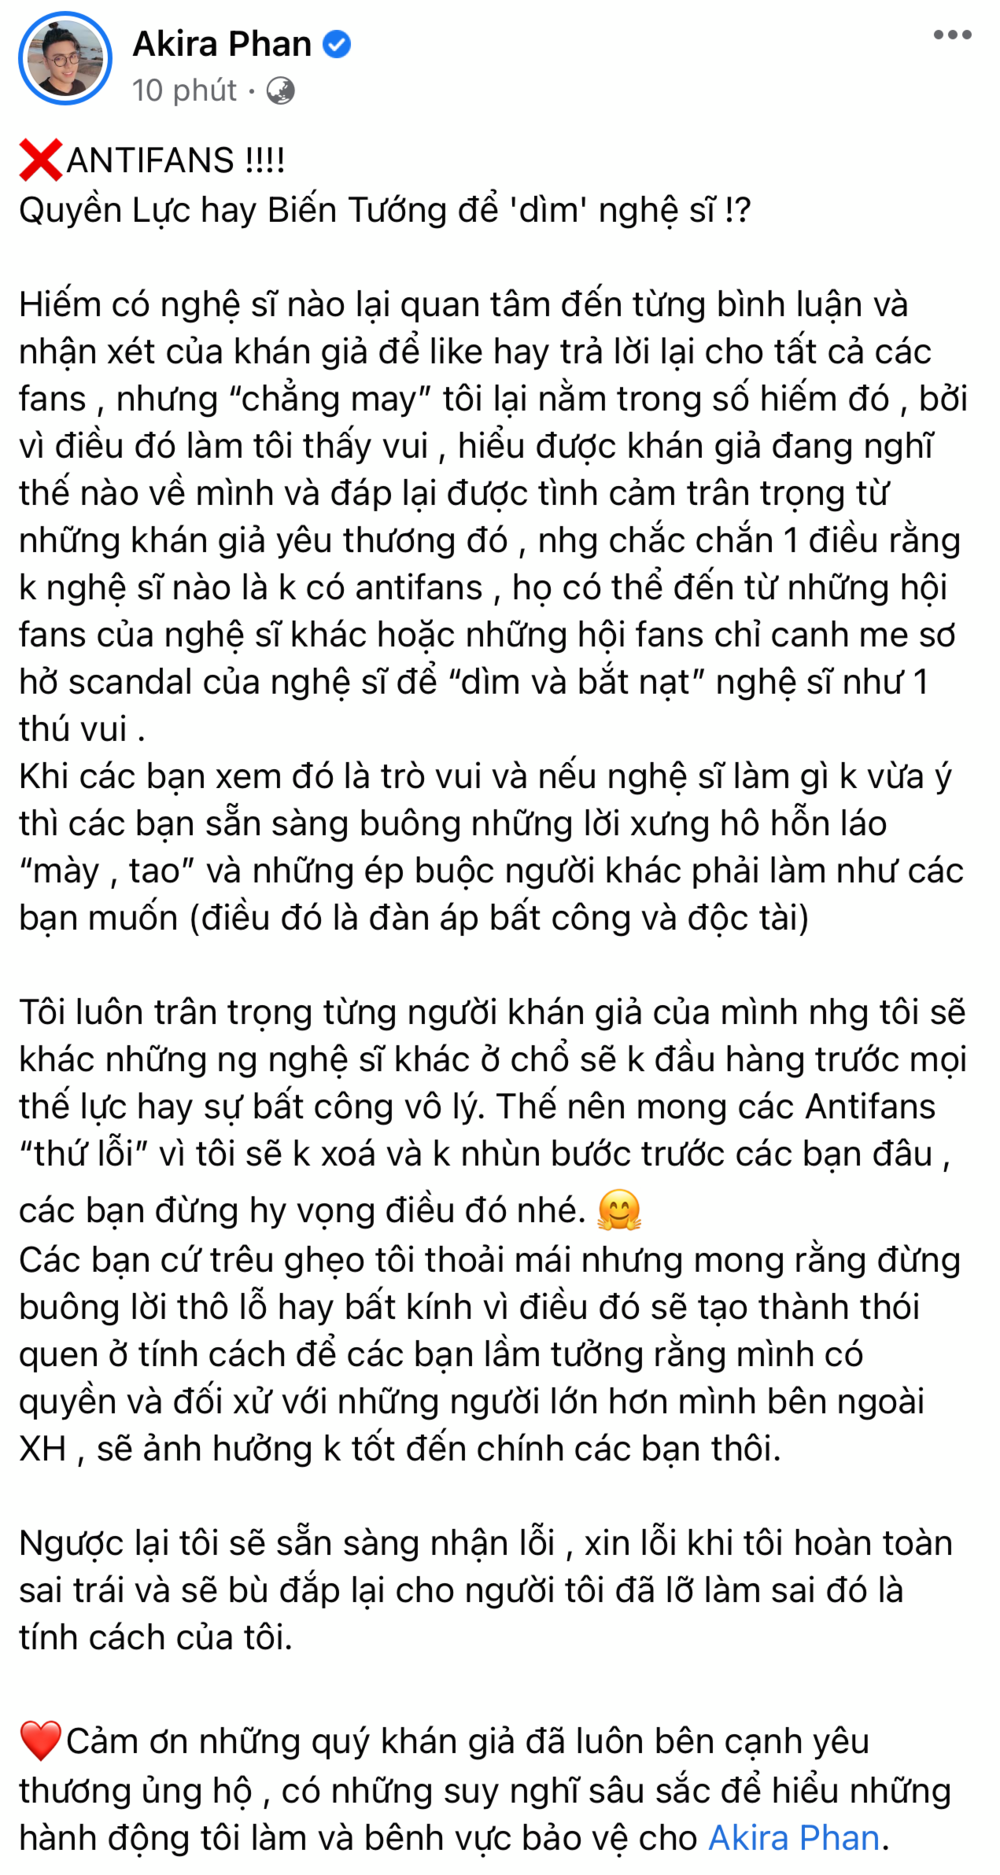  
Bài đăng mới nhất của nam ca sĩ về những màn "ném đá" vô lý của anti-fan. (Ảnh: FBNV) - Tin sao Viet - Tin tuc sao Viet - Scandal sao Viet - Tin tuc cua Sao - Tin cua Sao